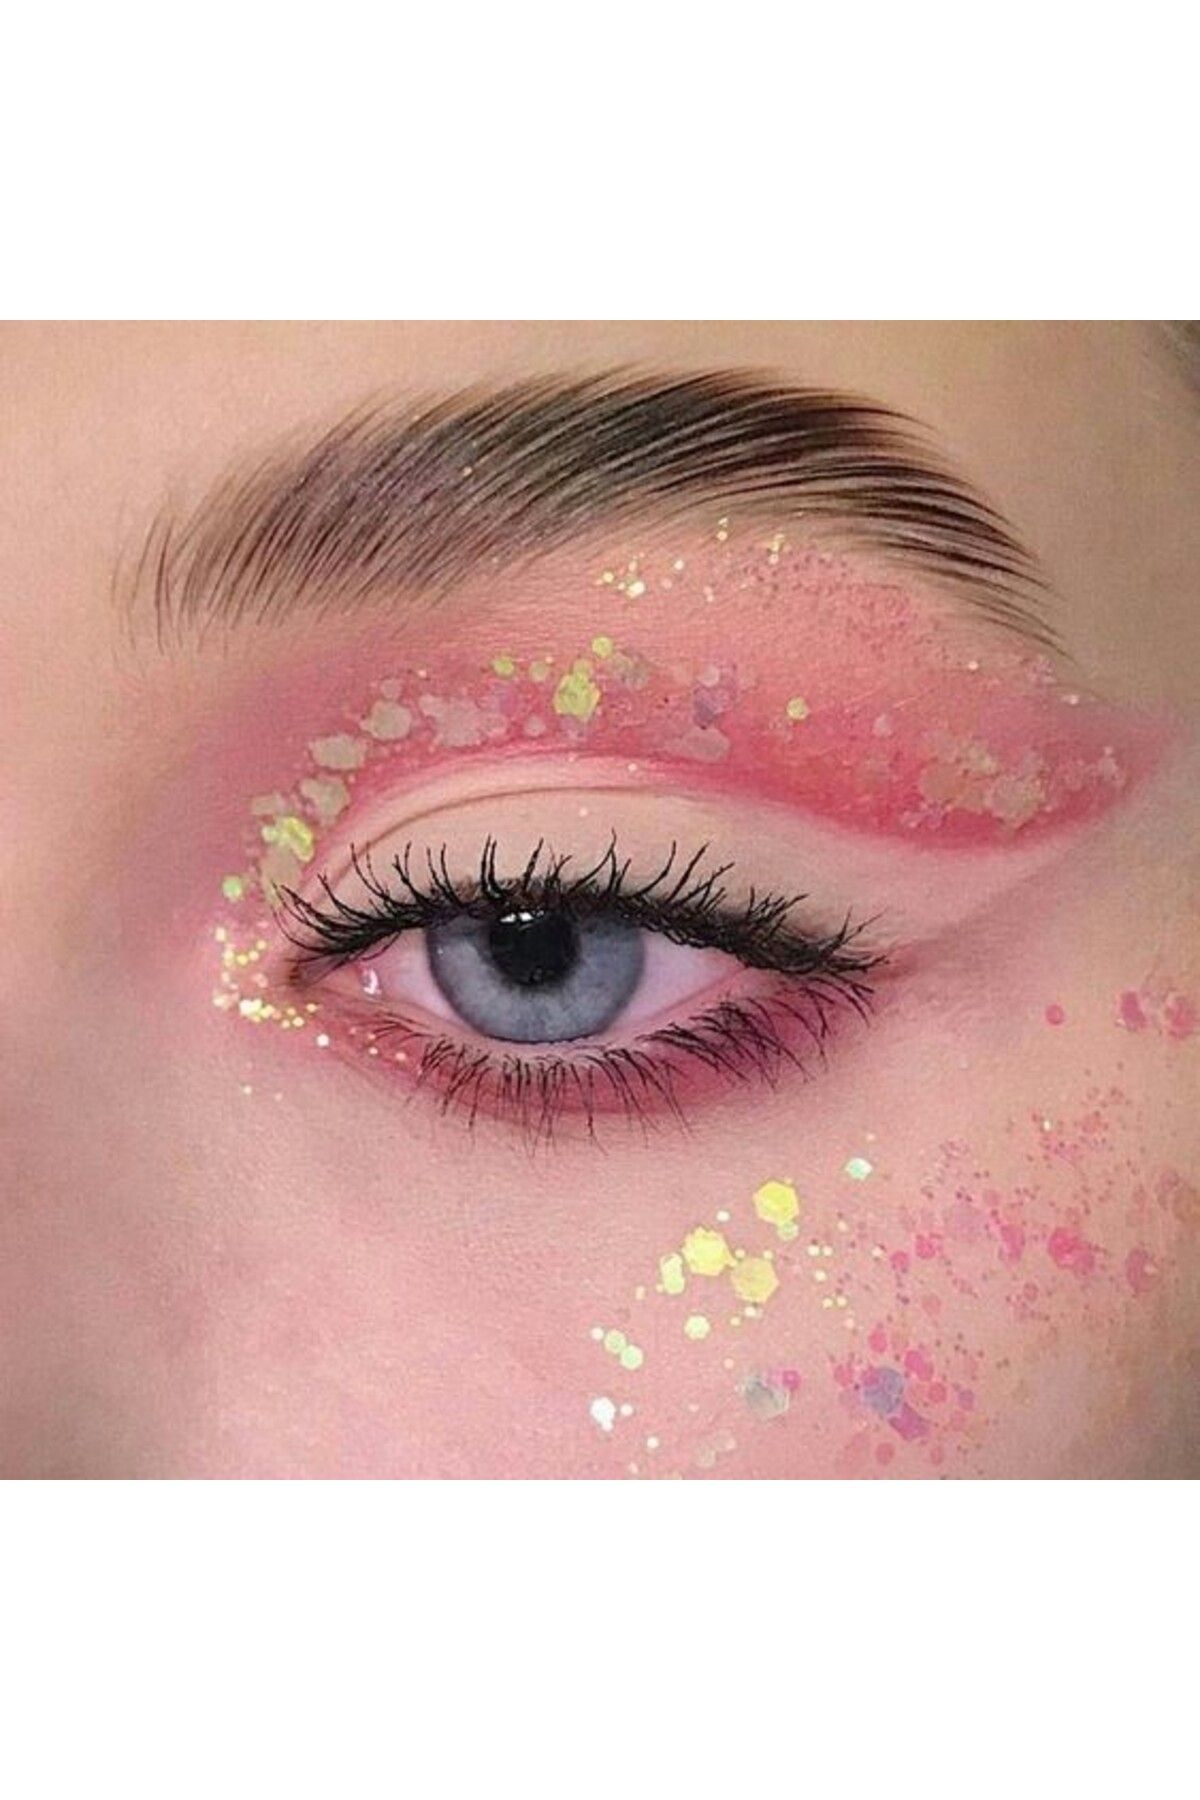 Artikel Pink Bubble Göz Simi, Yüz Ve Vücut Parıltısı, Party Glitter Makyaj Simi 5 ml